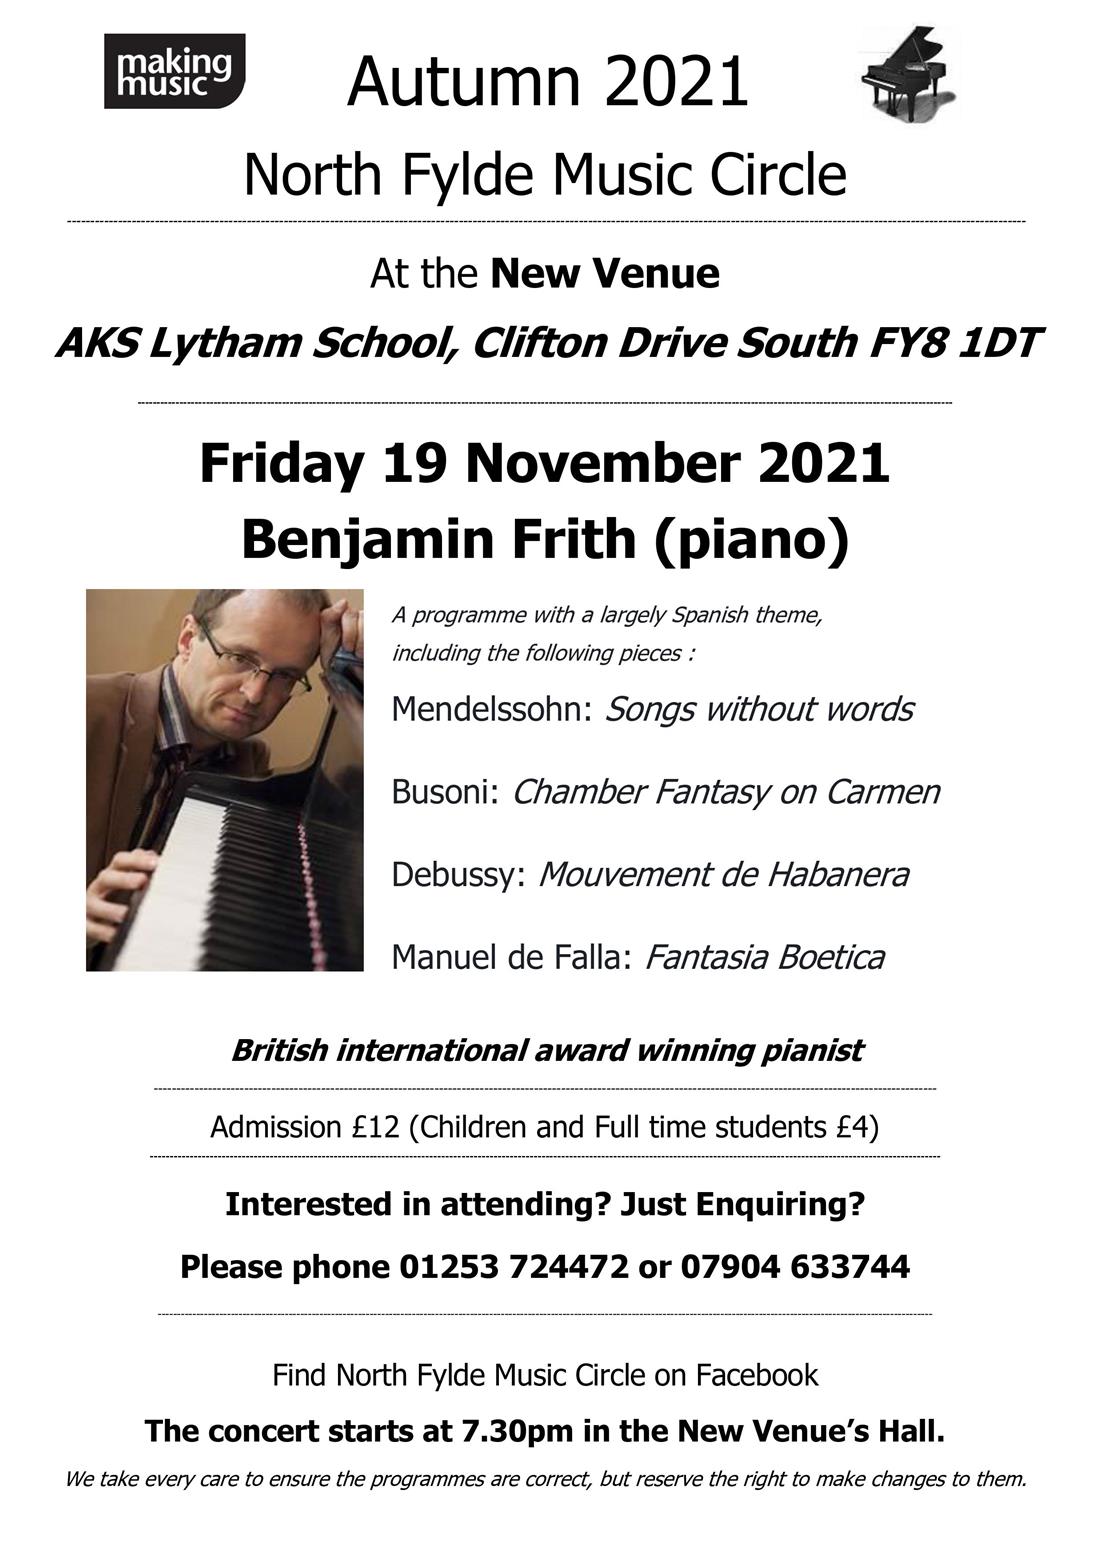 North Fylde Music Circle - Benjamin Frith